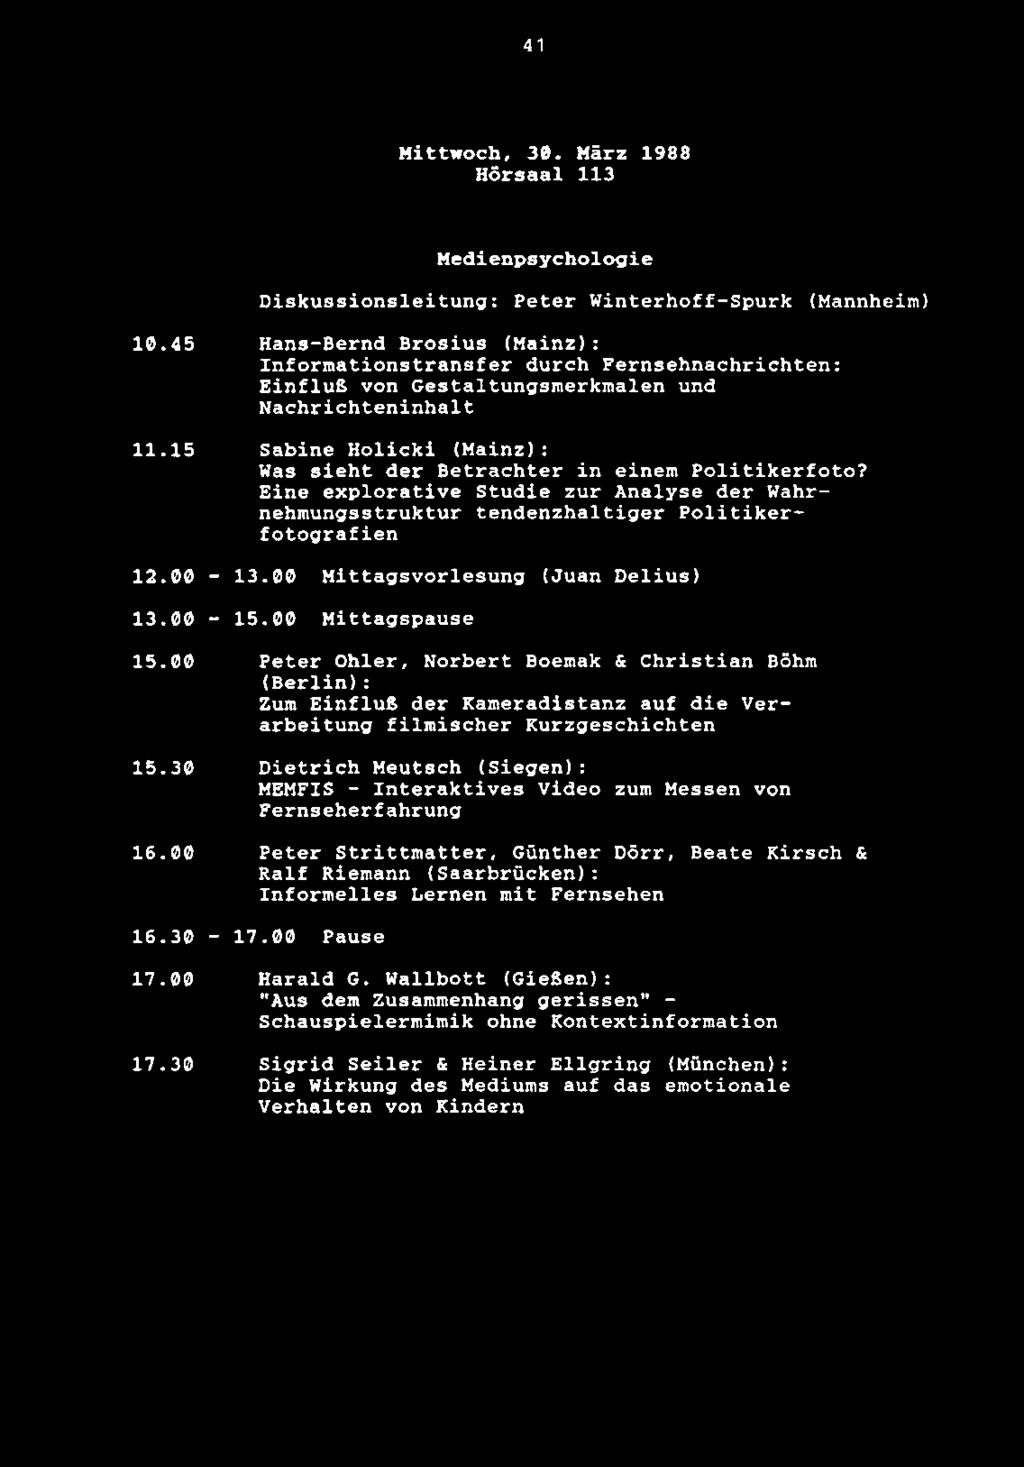 41 Mittwoch, 30. Marz 1988 Hdrsaal 113 Medienpsychologie Diskussionsleitung: Peter Winterhoff-Spurk (Mannheim) 10.